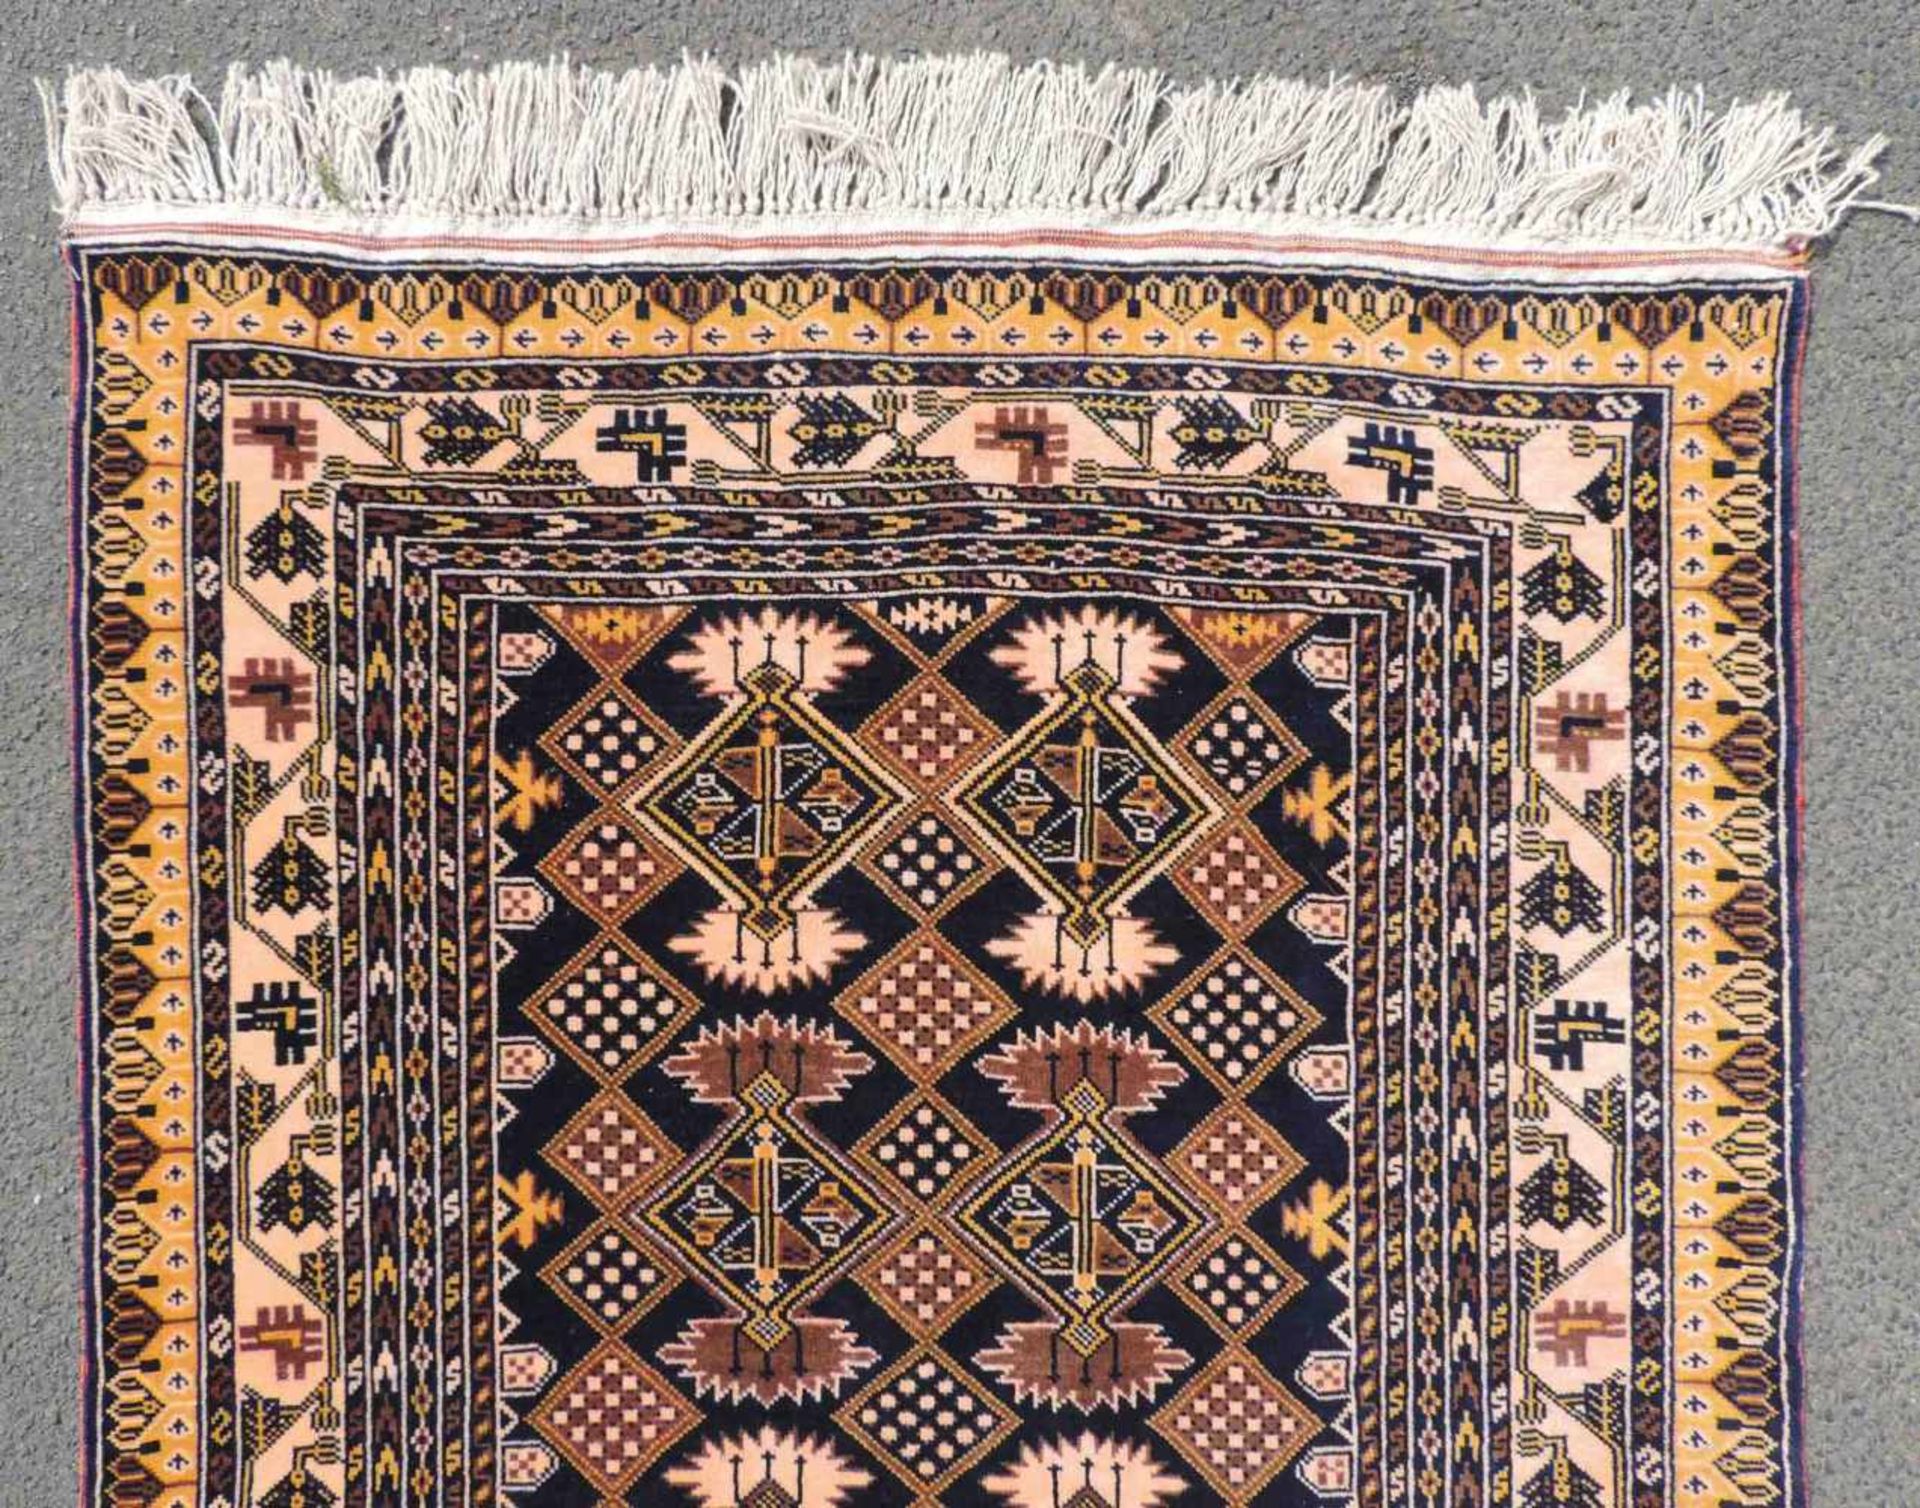 Mauri Stammesteppich. Afghanistan. Alt. Feine Knüpfung.145 cm x 93 cm. Handgeknüpft. Wolle auf - Bild 4 aus 6